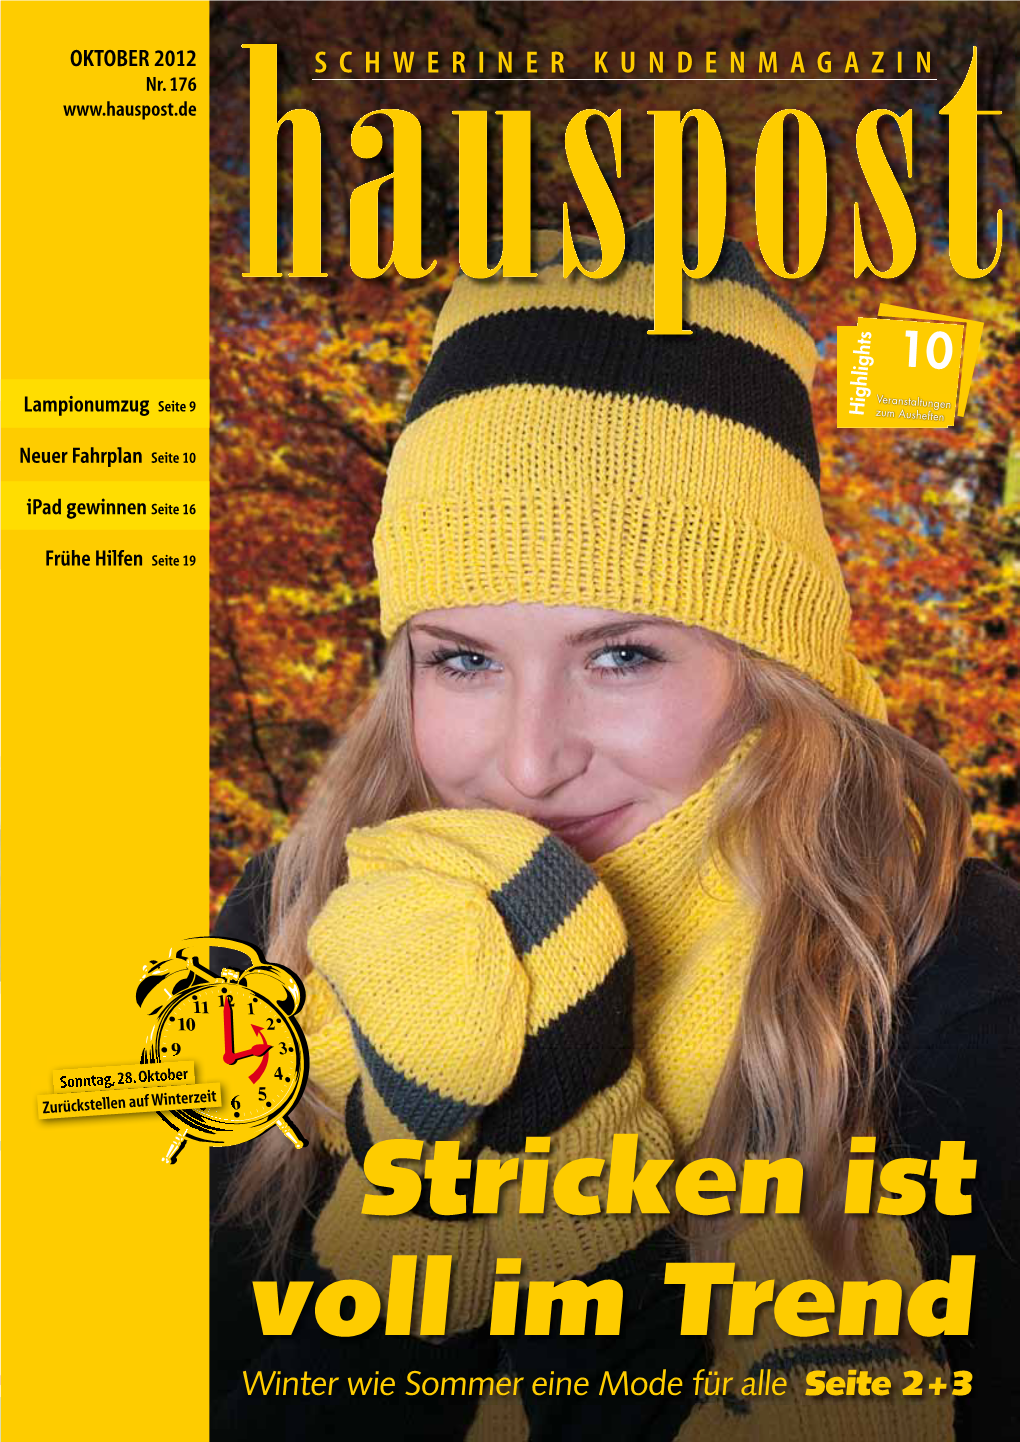 Stricken Ist Voll Im Trend Winter Wie Sommer Eine Mode Für Alle Seite 2 + 3 Hauspost Oktober 2012 | Seite 1 Editorial Rückblick